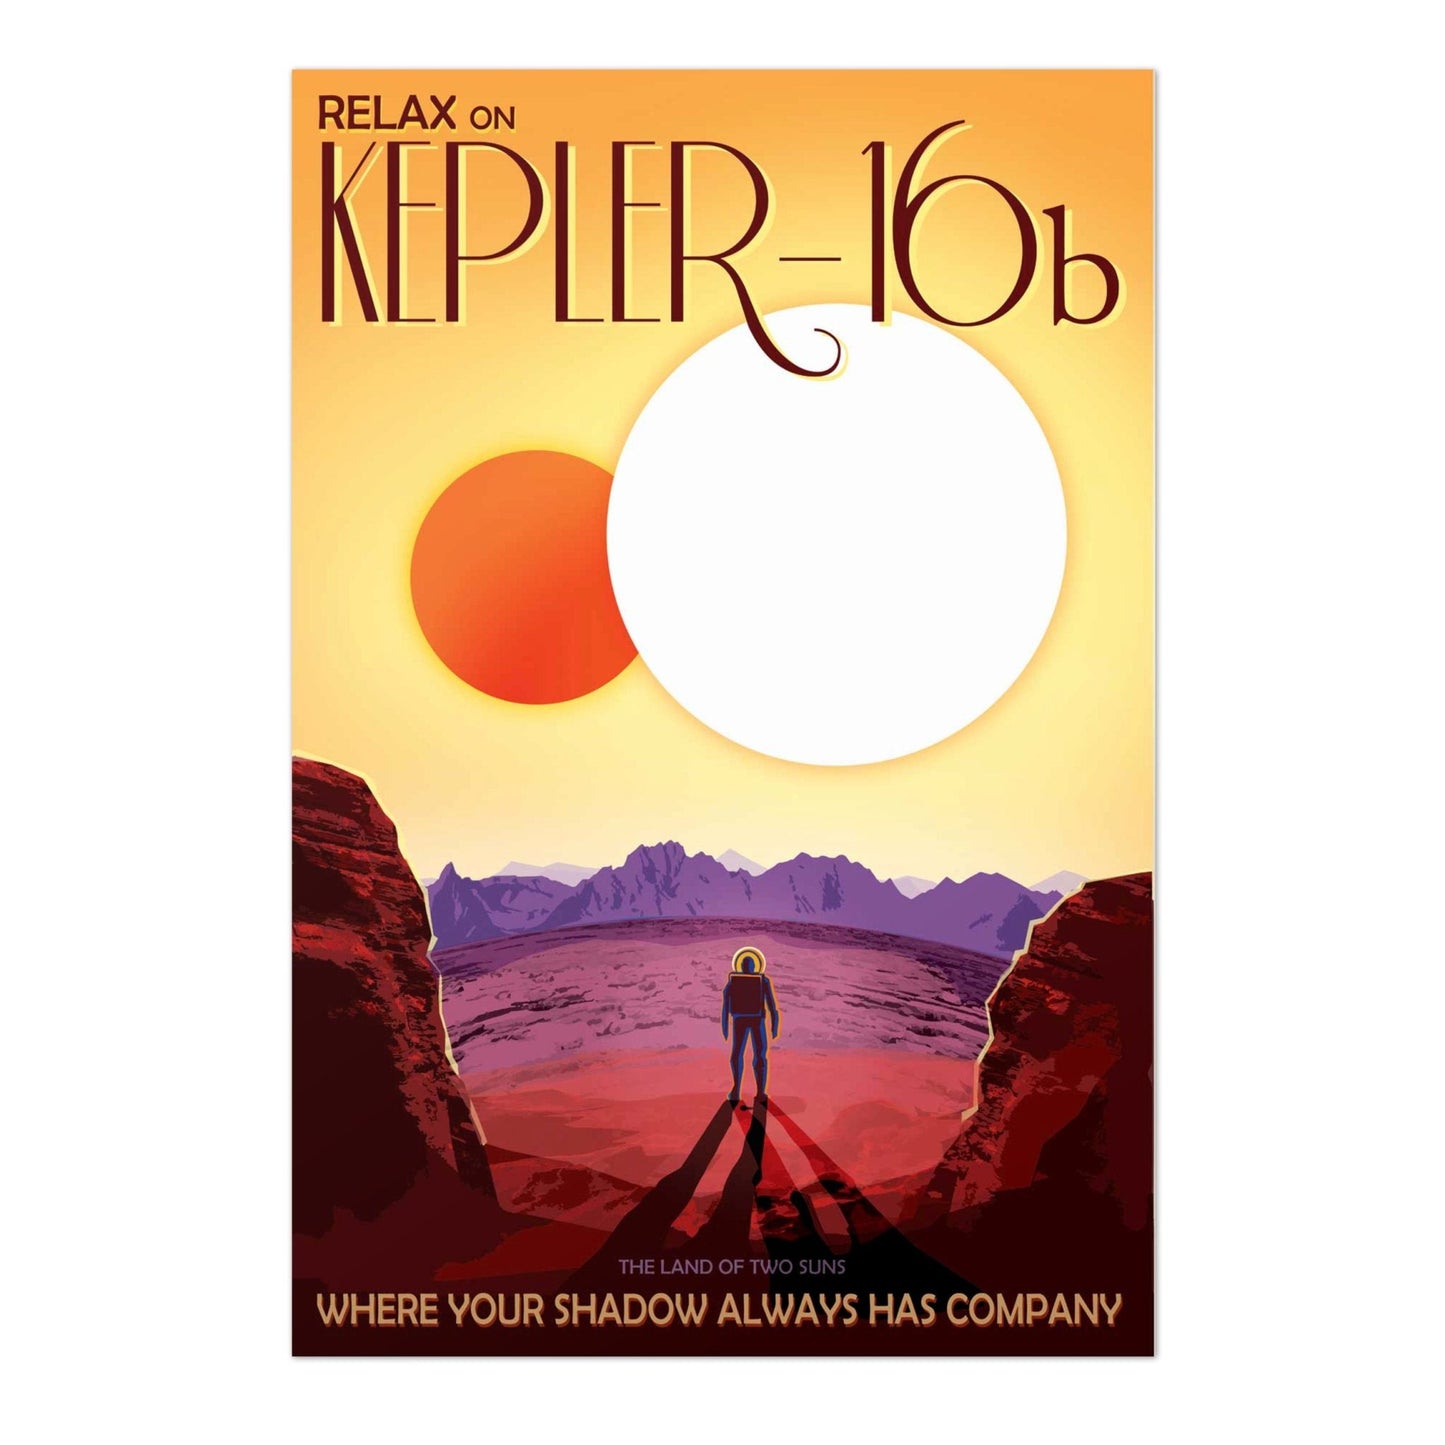 NASA Visions Of The Future - Kepler-16b